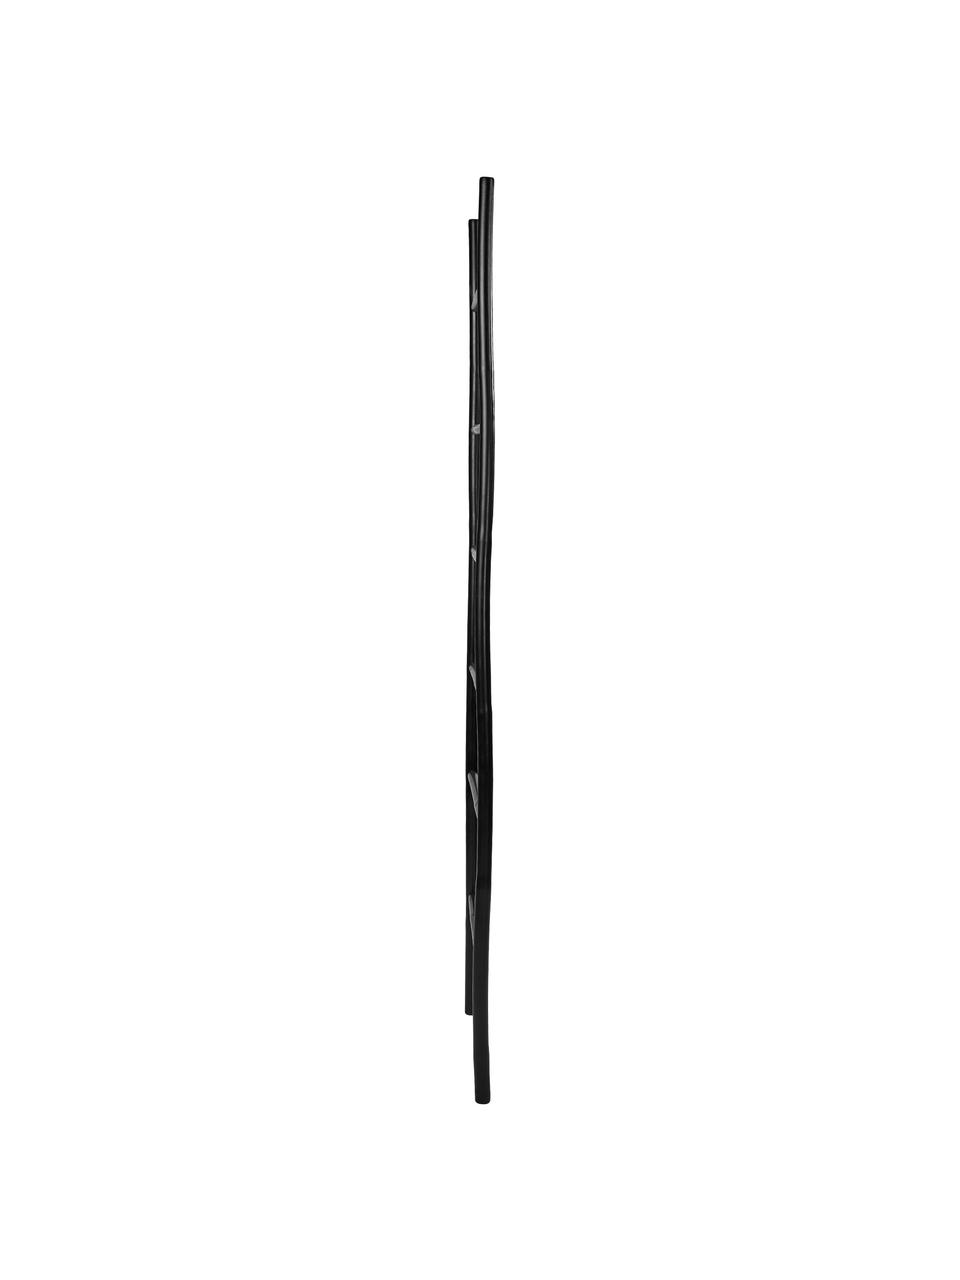 Estantería escalera de bambú Safari, Bambú, recubierto, Negro, An 50 x Al 190 cm